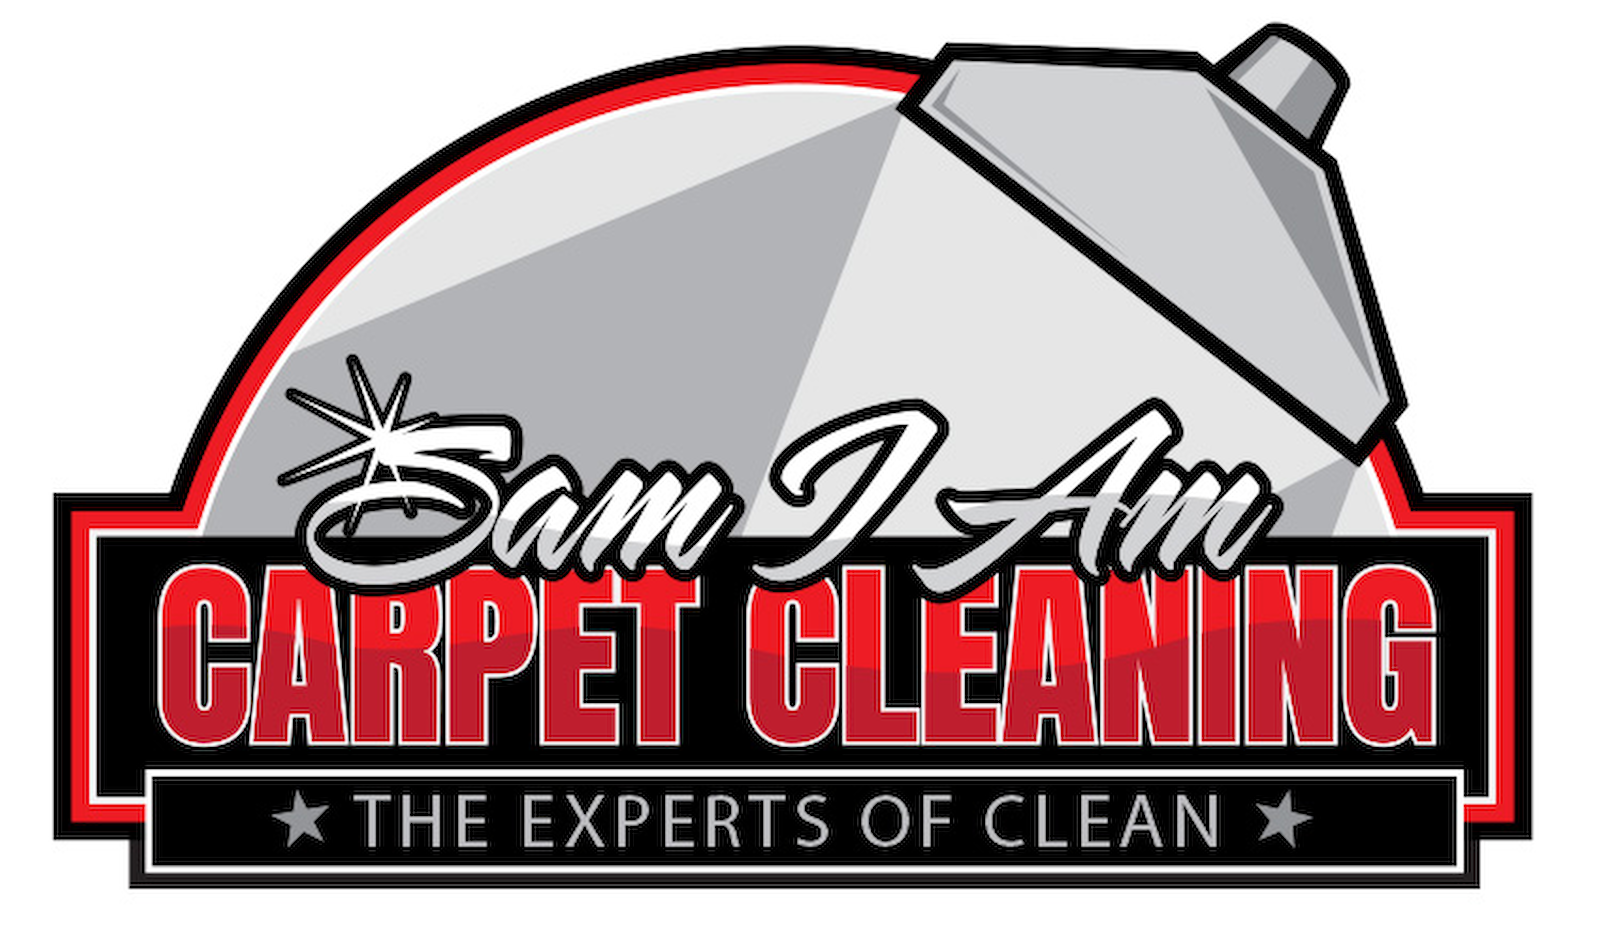 Sam I am Carpet Cleaning LLC